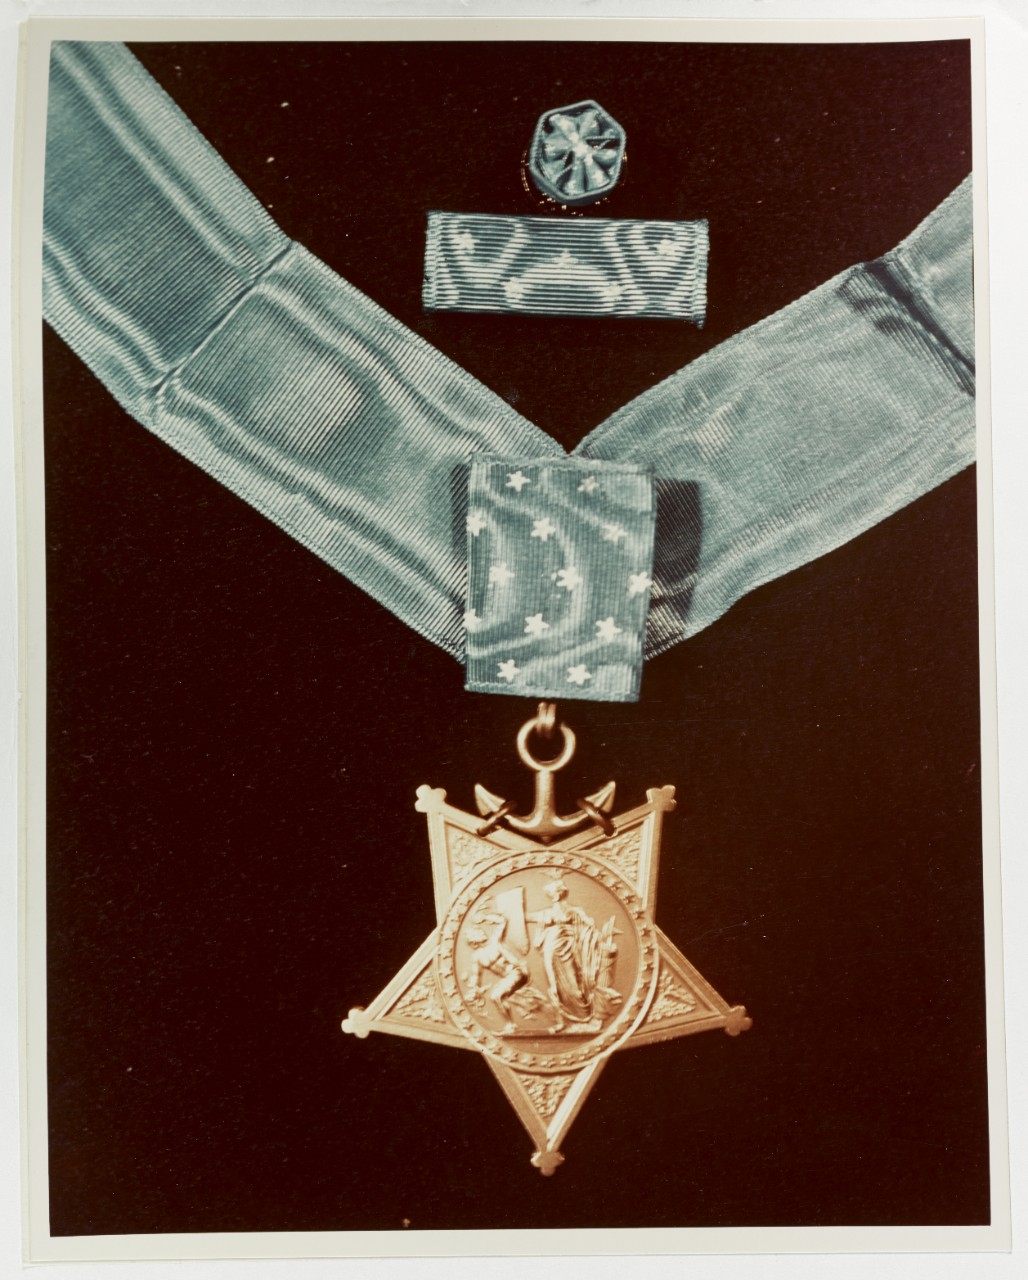 Photo #: 80-G-K-12122 U.S. Navy Medal of Honor